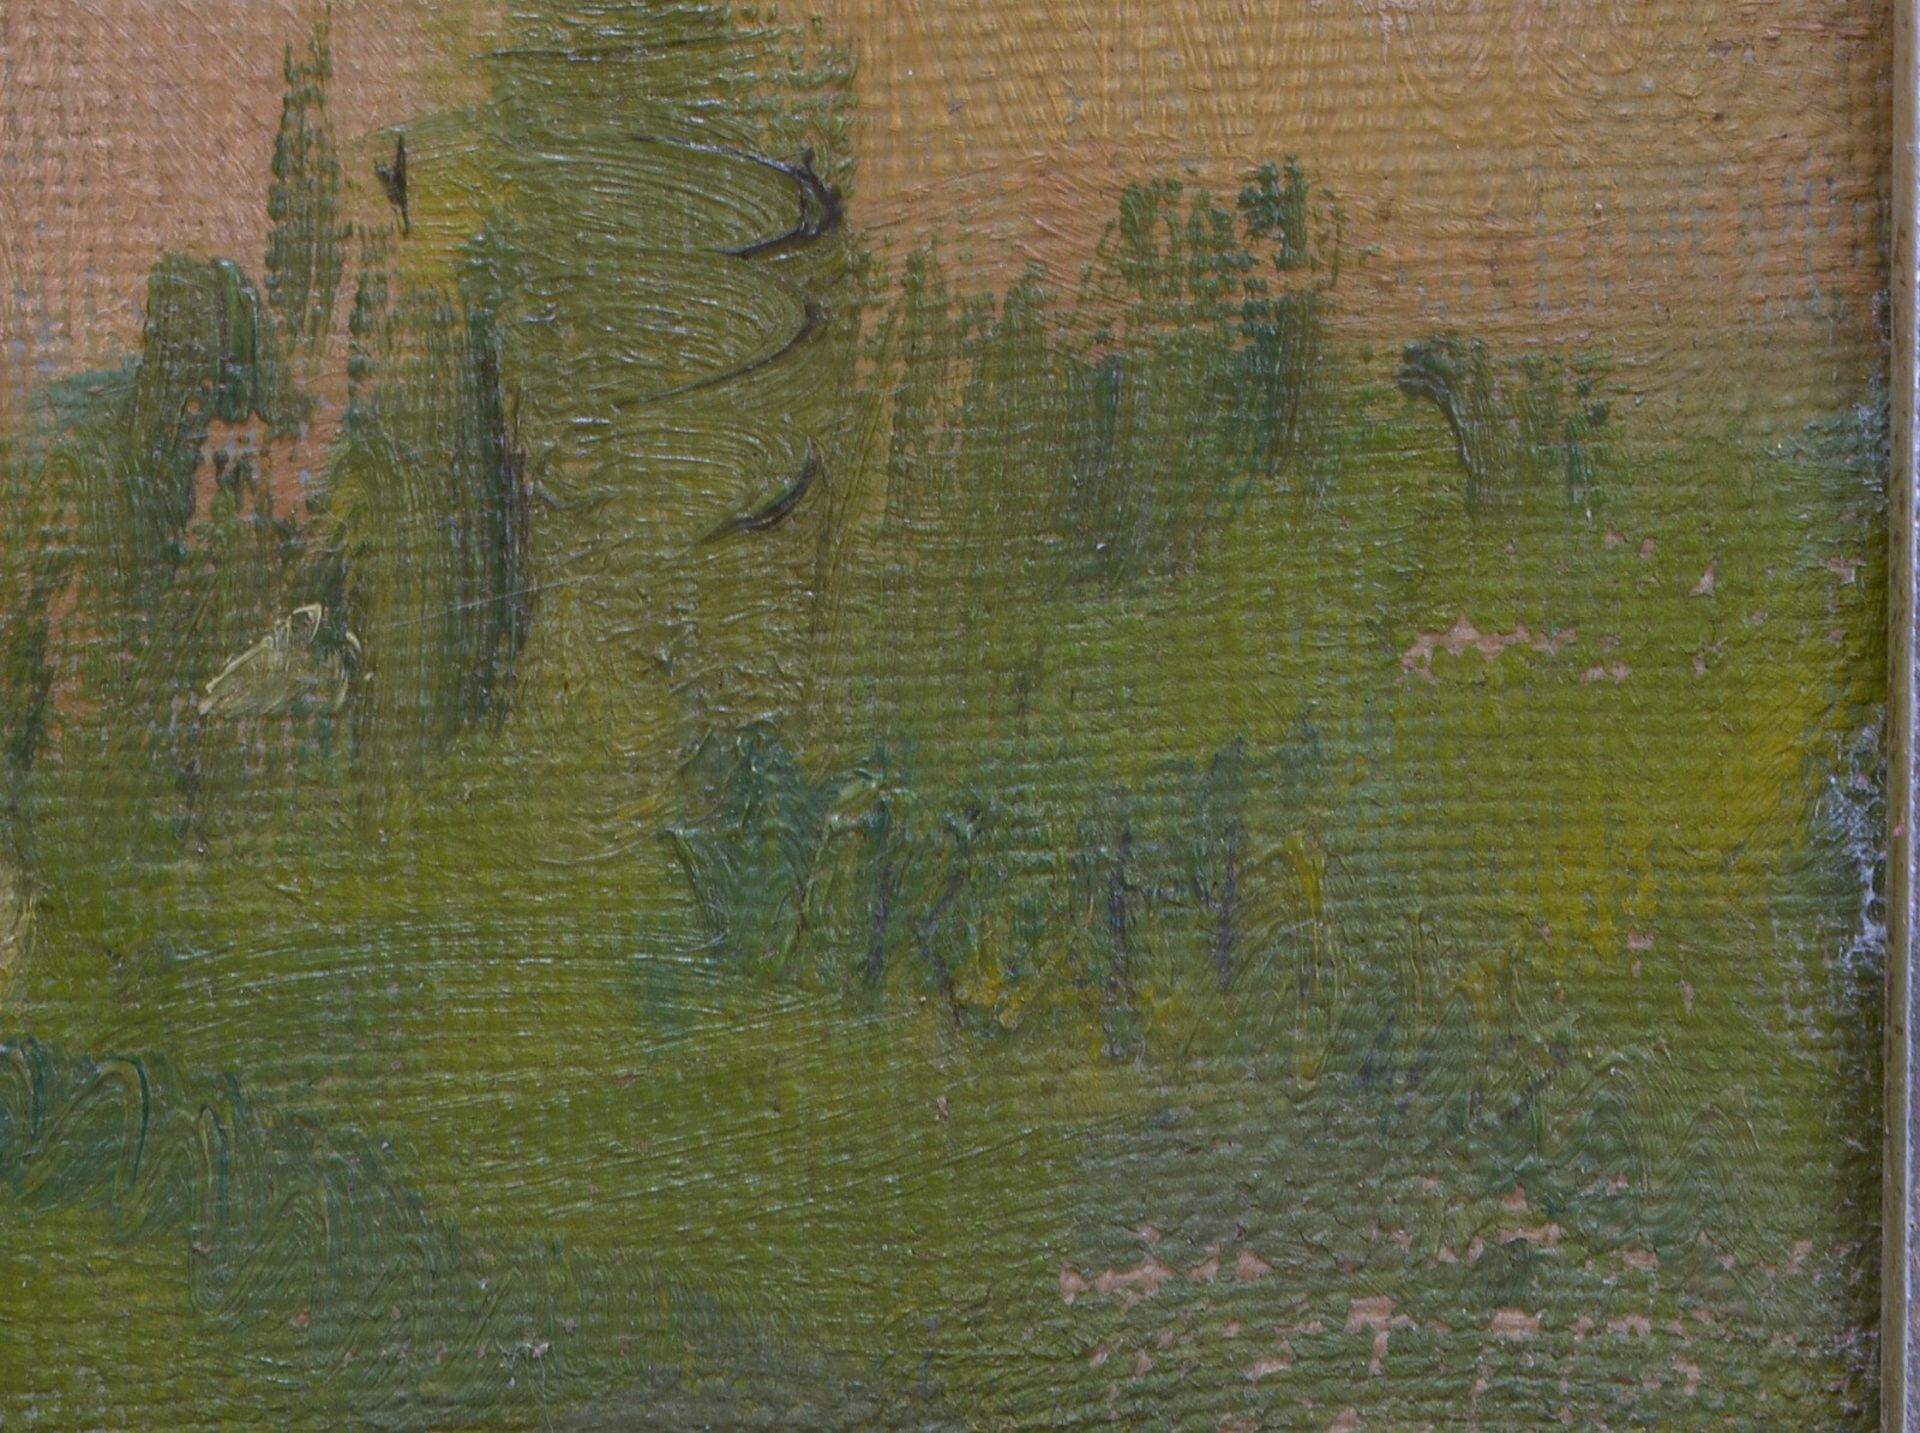 Gemälde, 'Kornhocken vor Farbrikanlage', Öl/Lw, unsign.; Bildmaße 65 x 92 cm - Bild 2 aus 2